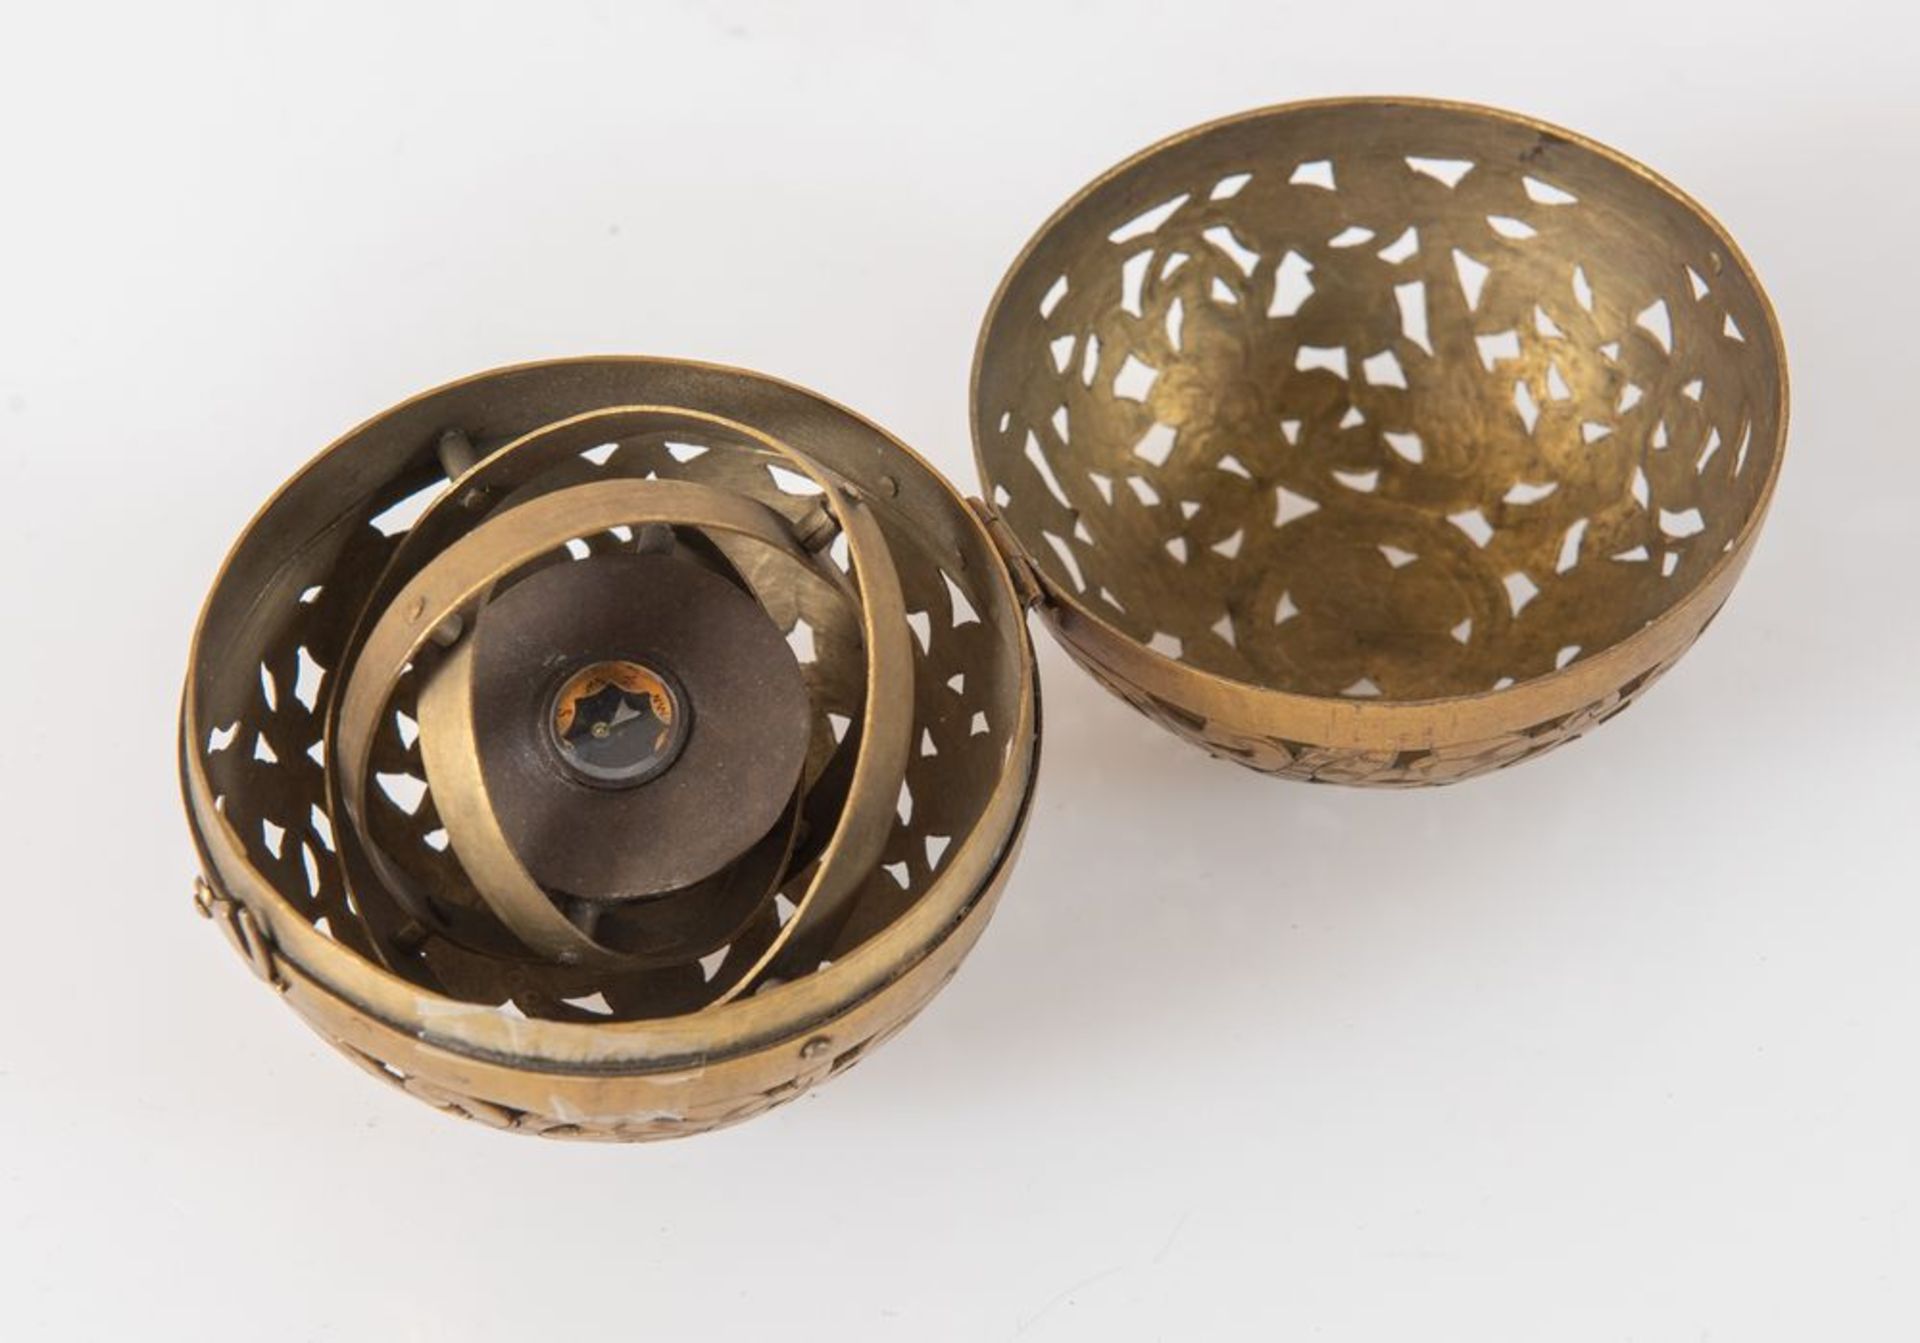 Antica bussola giroscopica racchiusa in sfera di bronzo traforata e incisa. Cm 7,5x8.